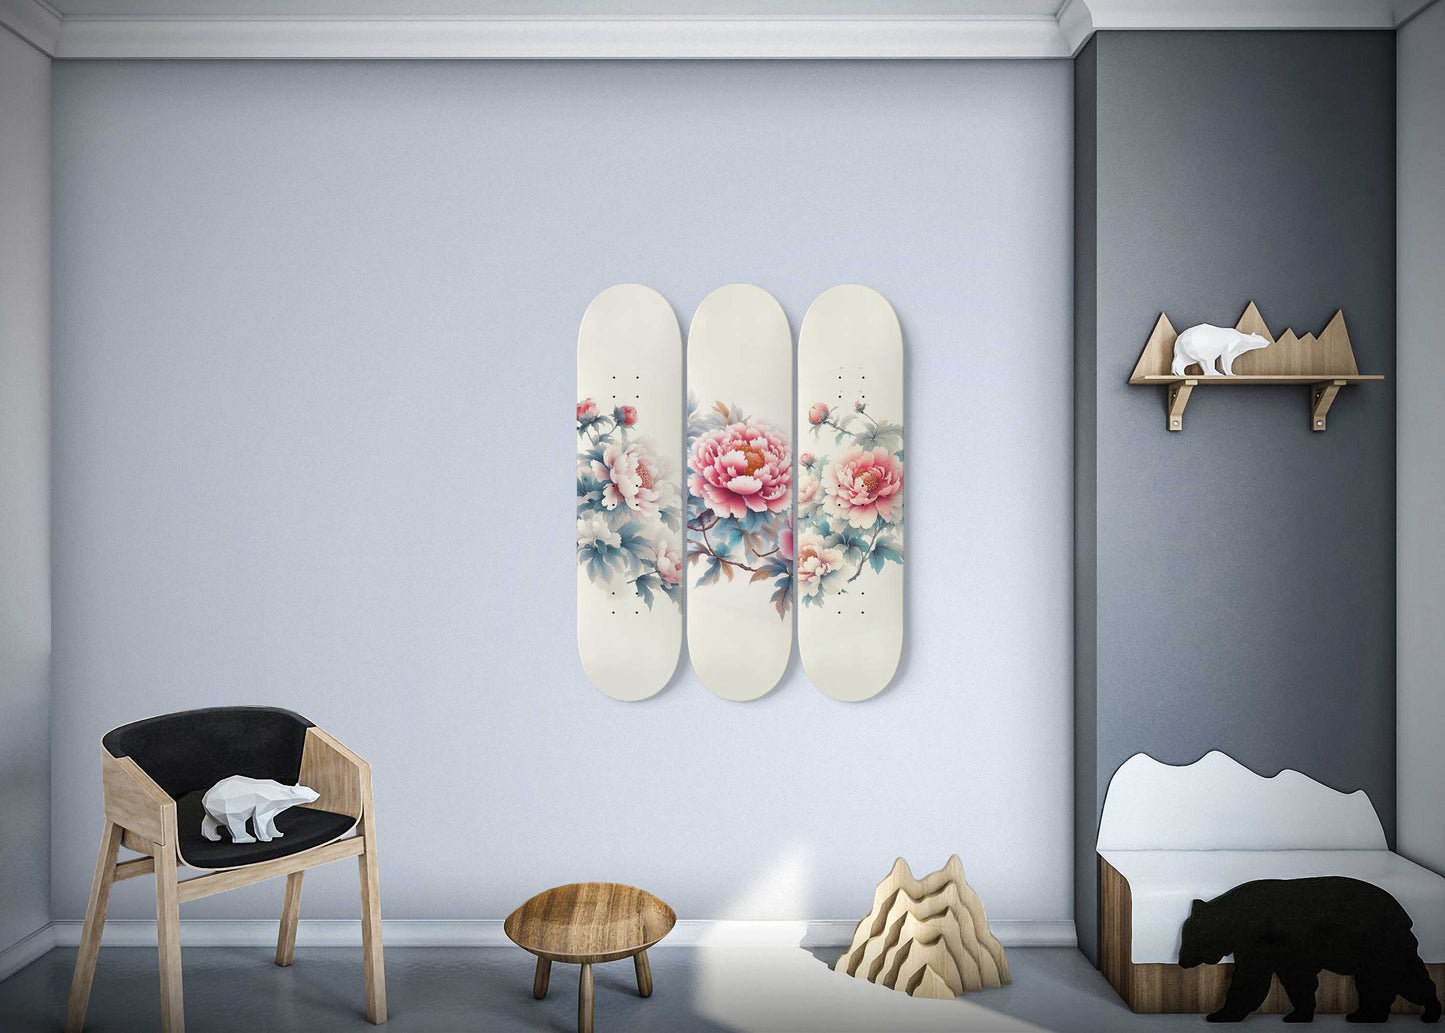 Chinese Peony 3-Deck Skateboard Wall Art